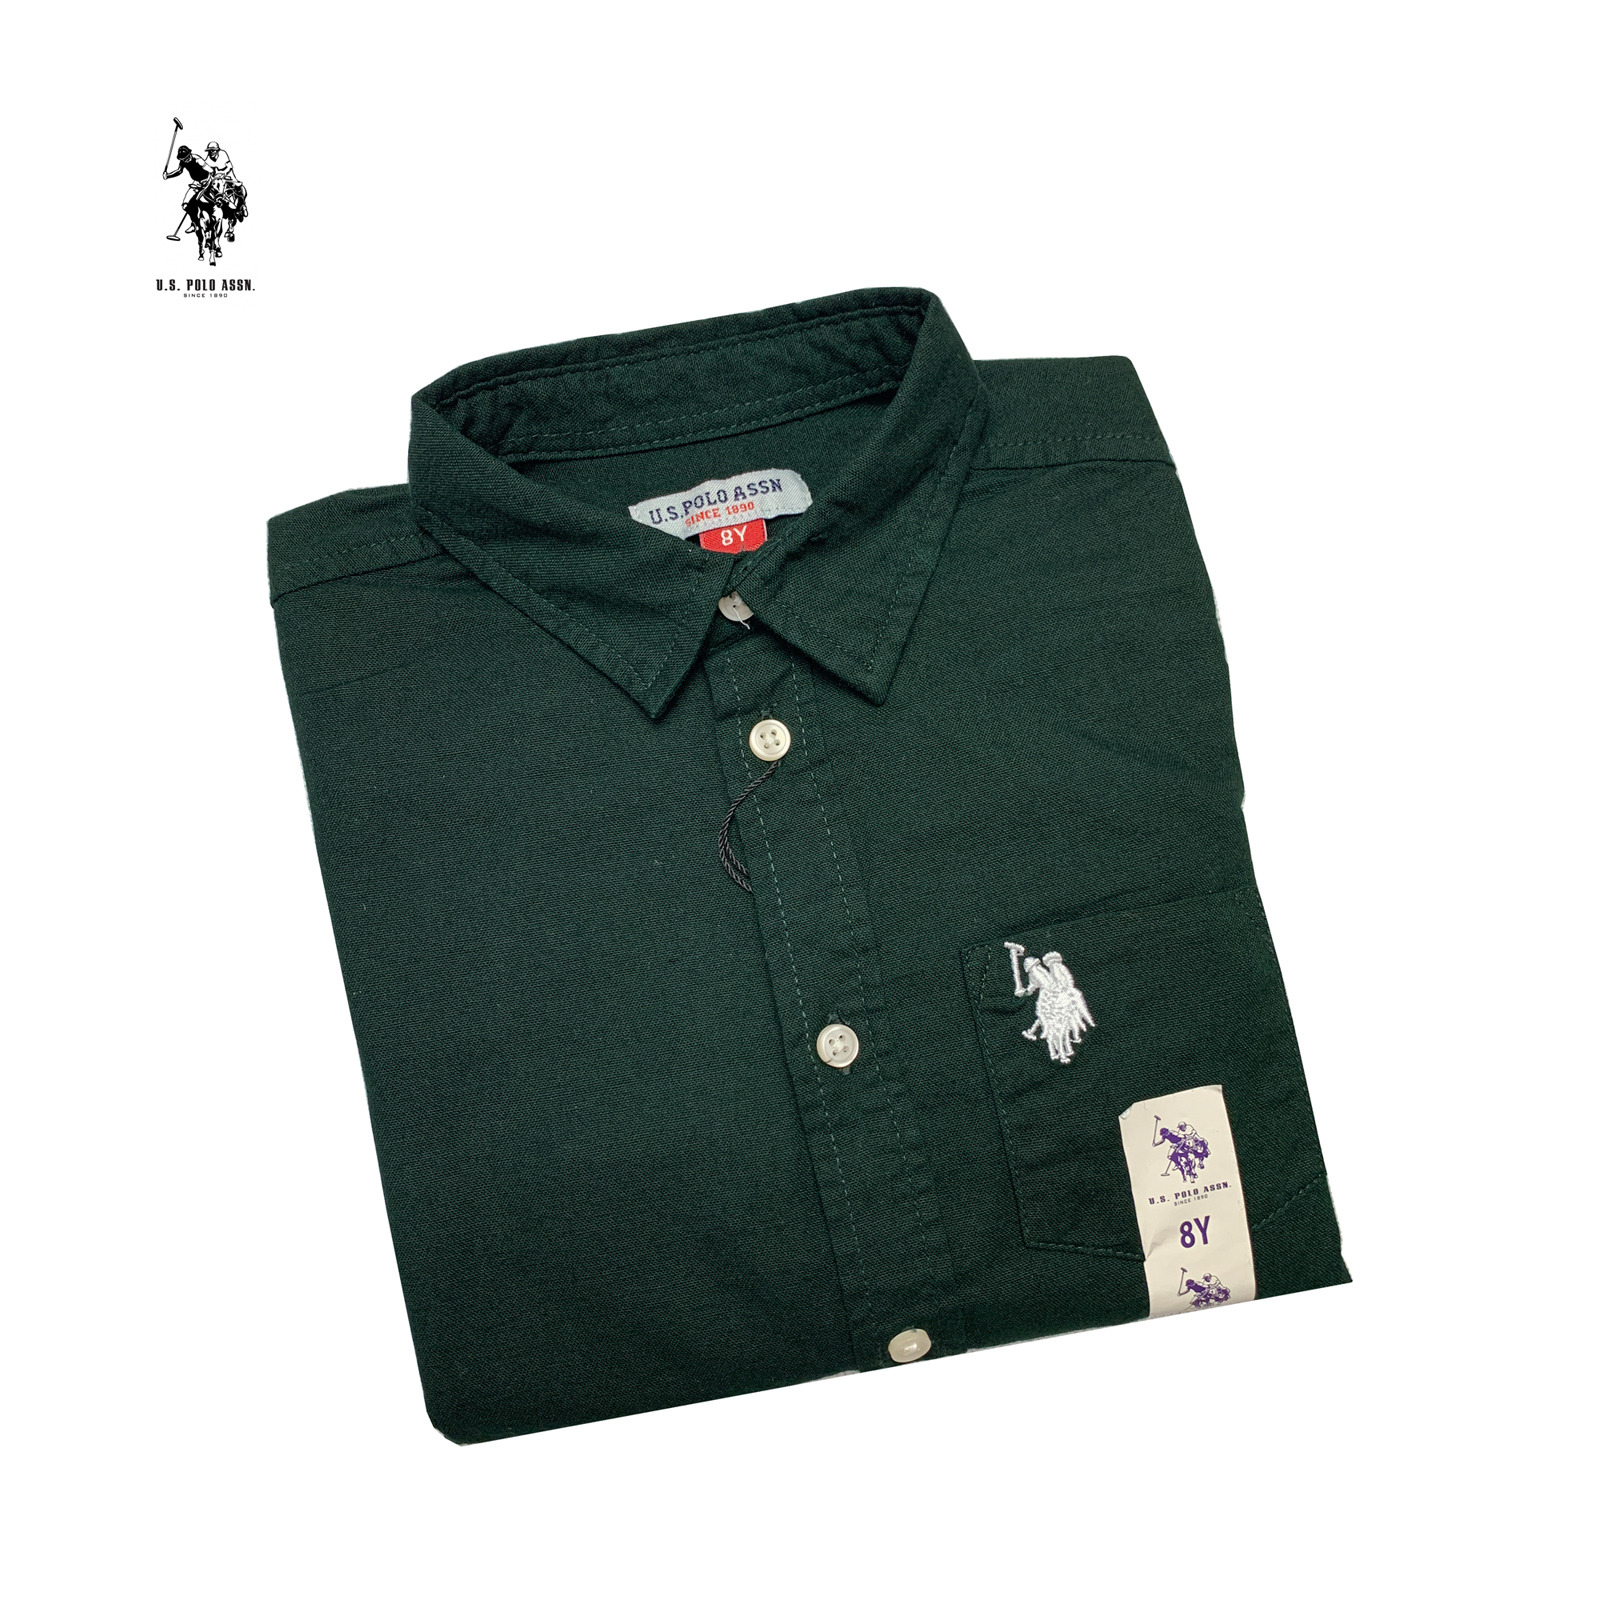 پیراهن پسرانه نخی رنگ سبز برند US Polo